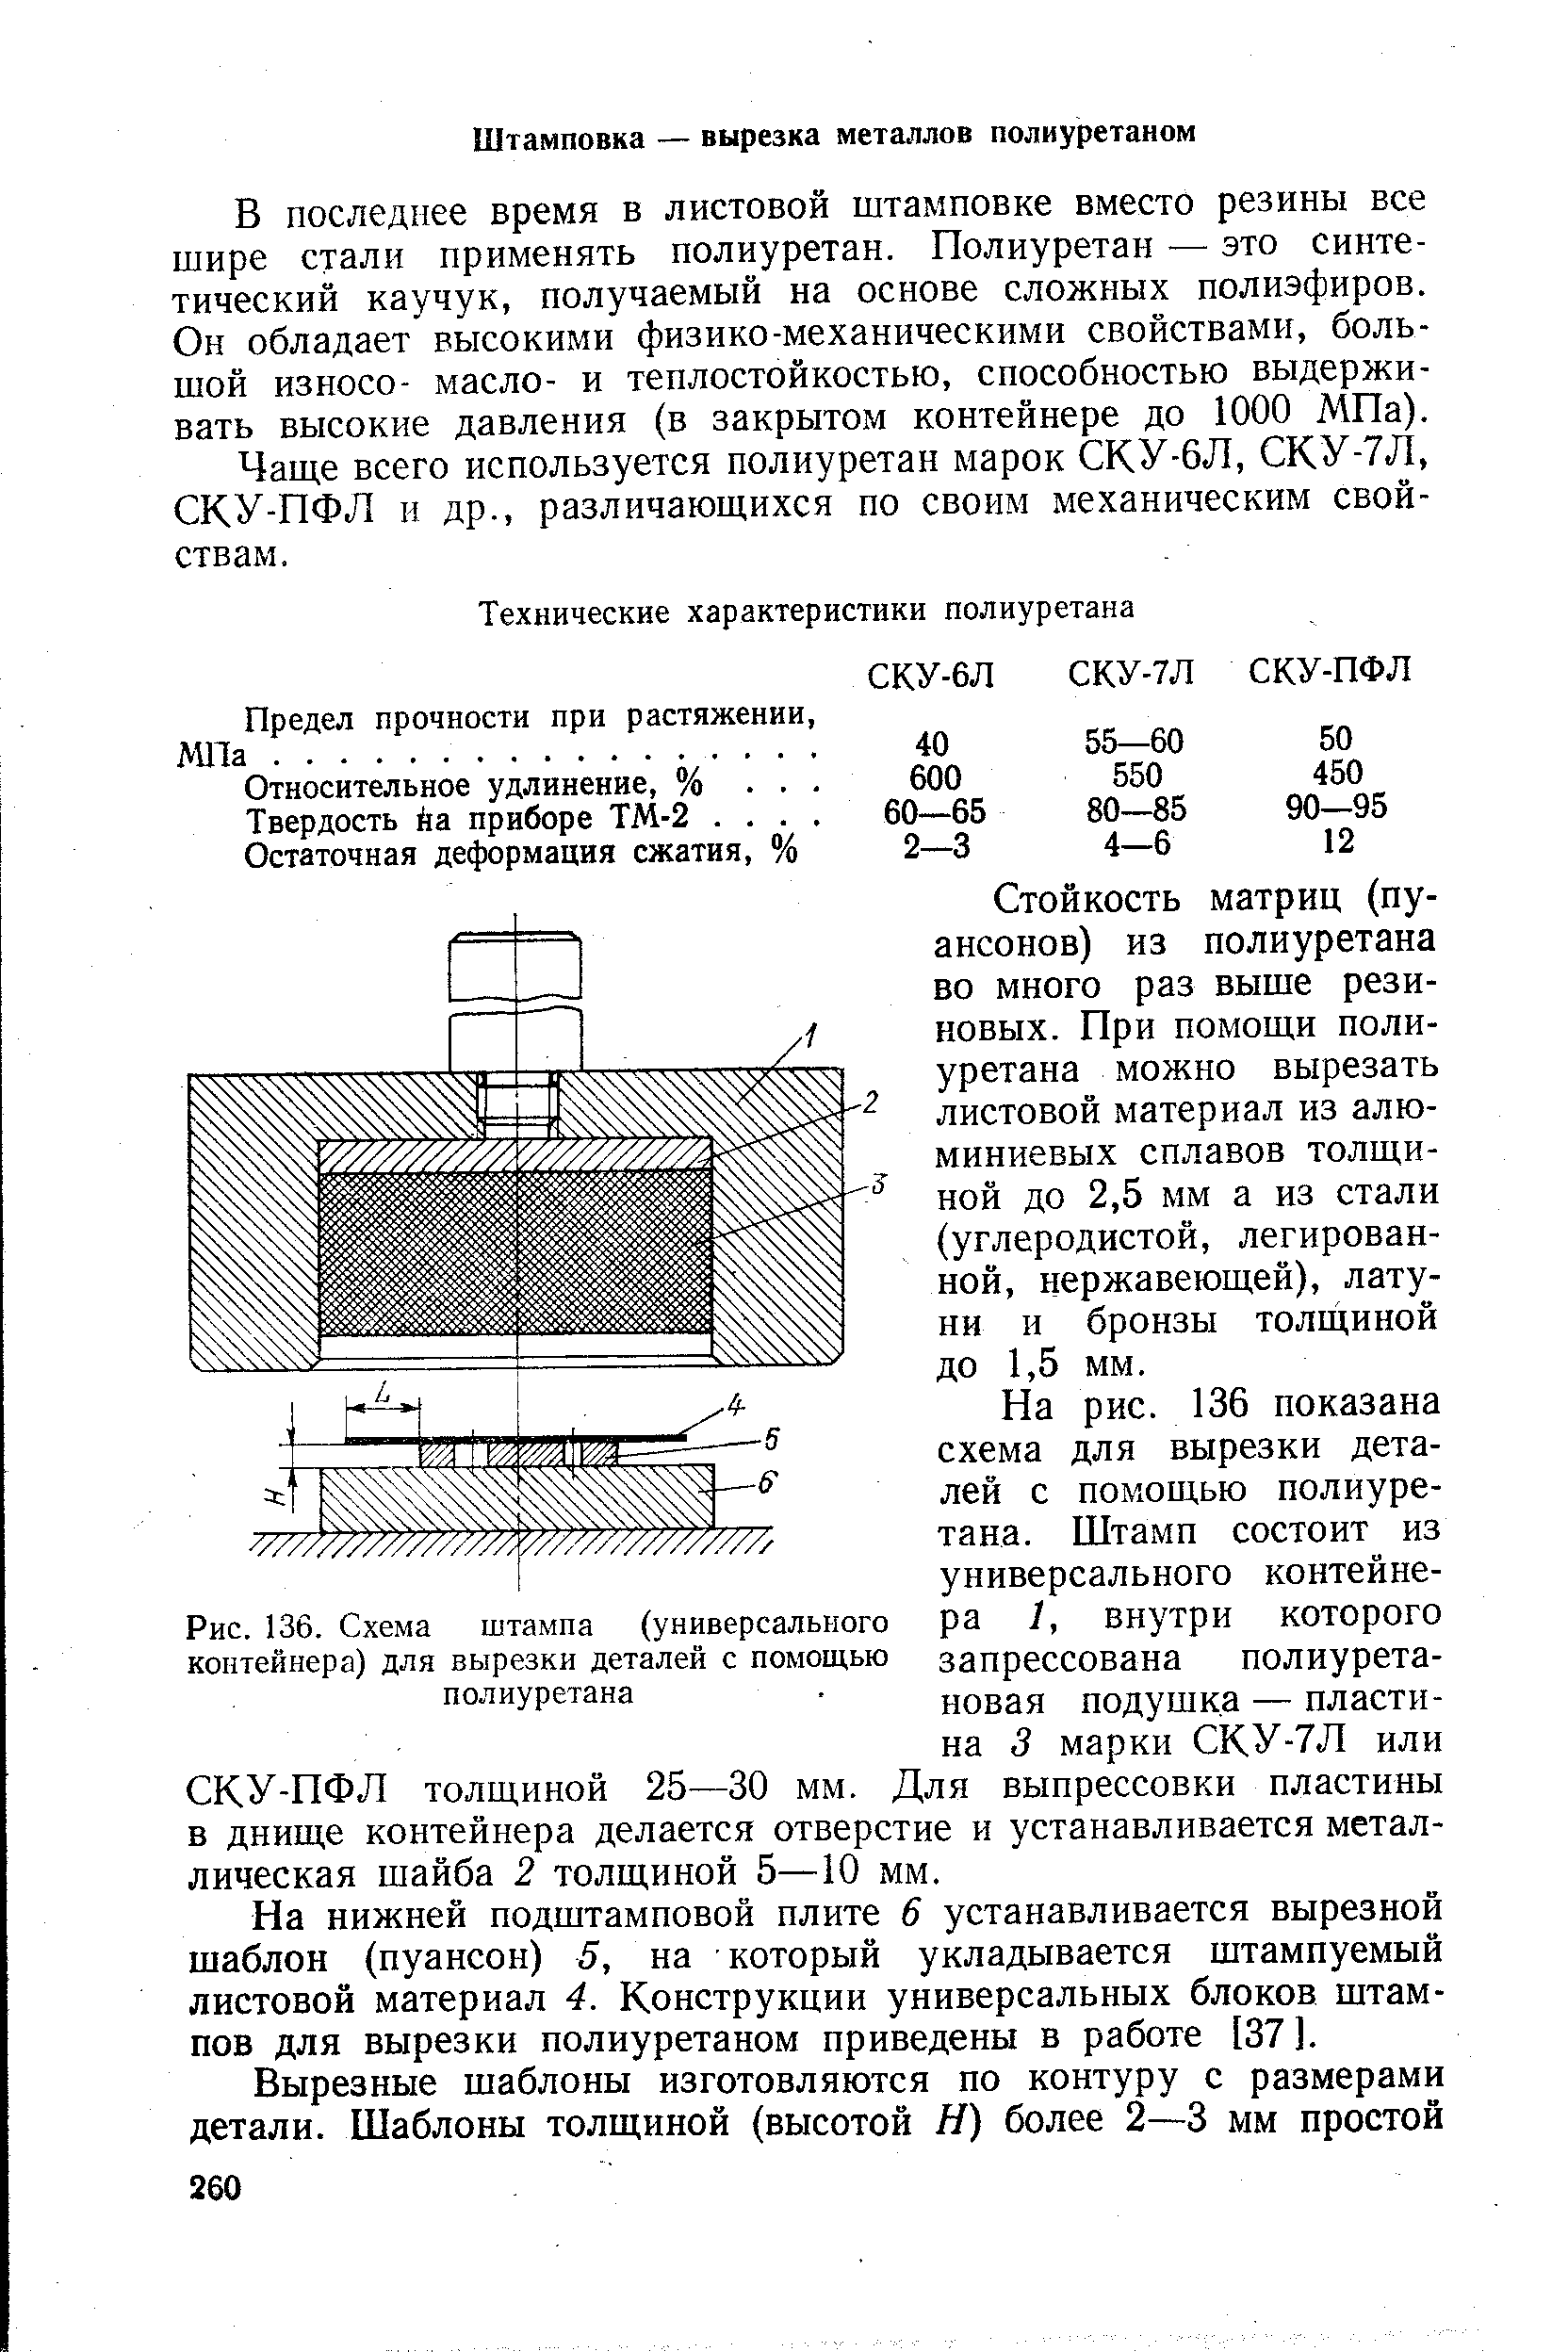 Рис. 136. Схема штампа (<a href="/info/271509">универсального контейнера</a>) для вырезки деталей с помощью полиуретана
